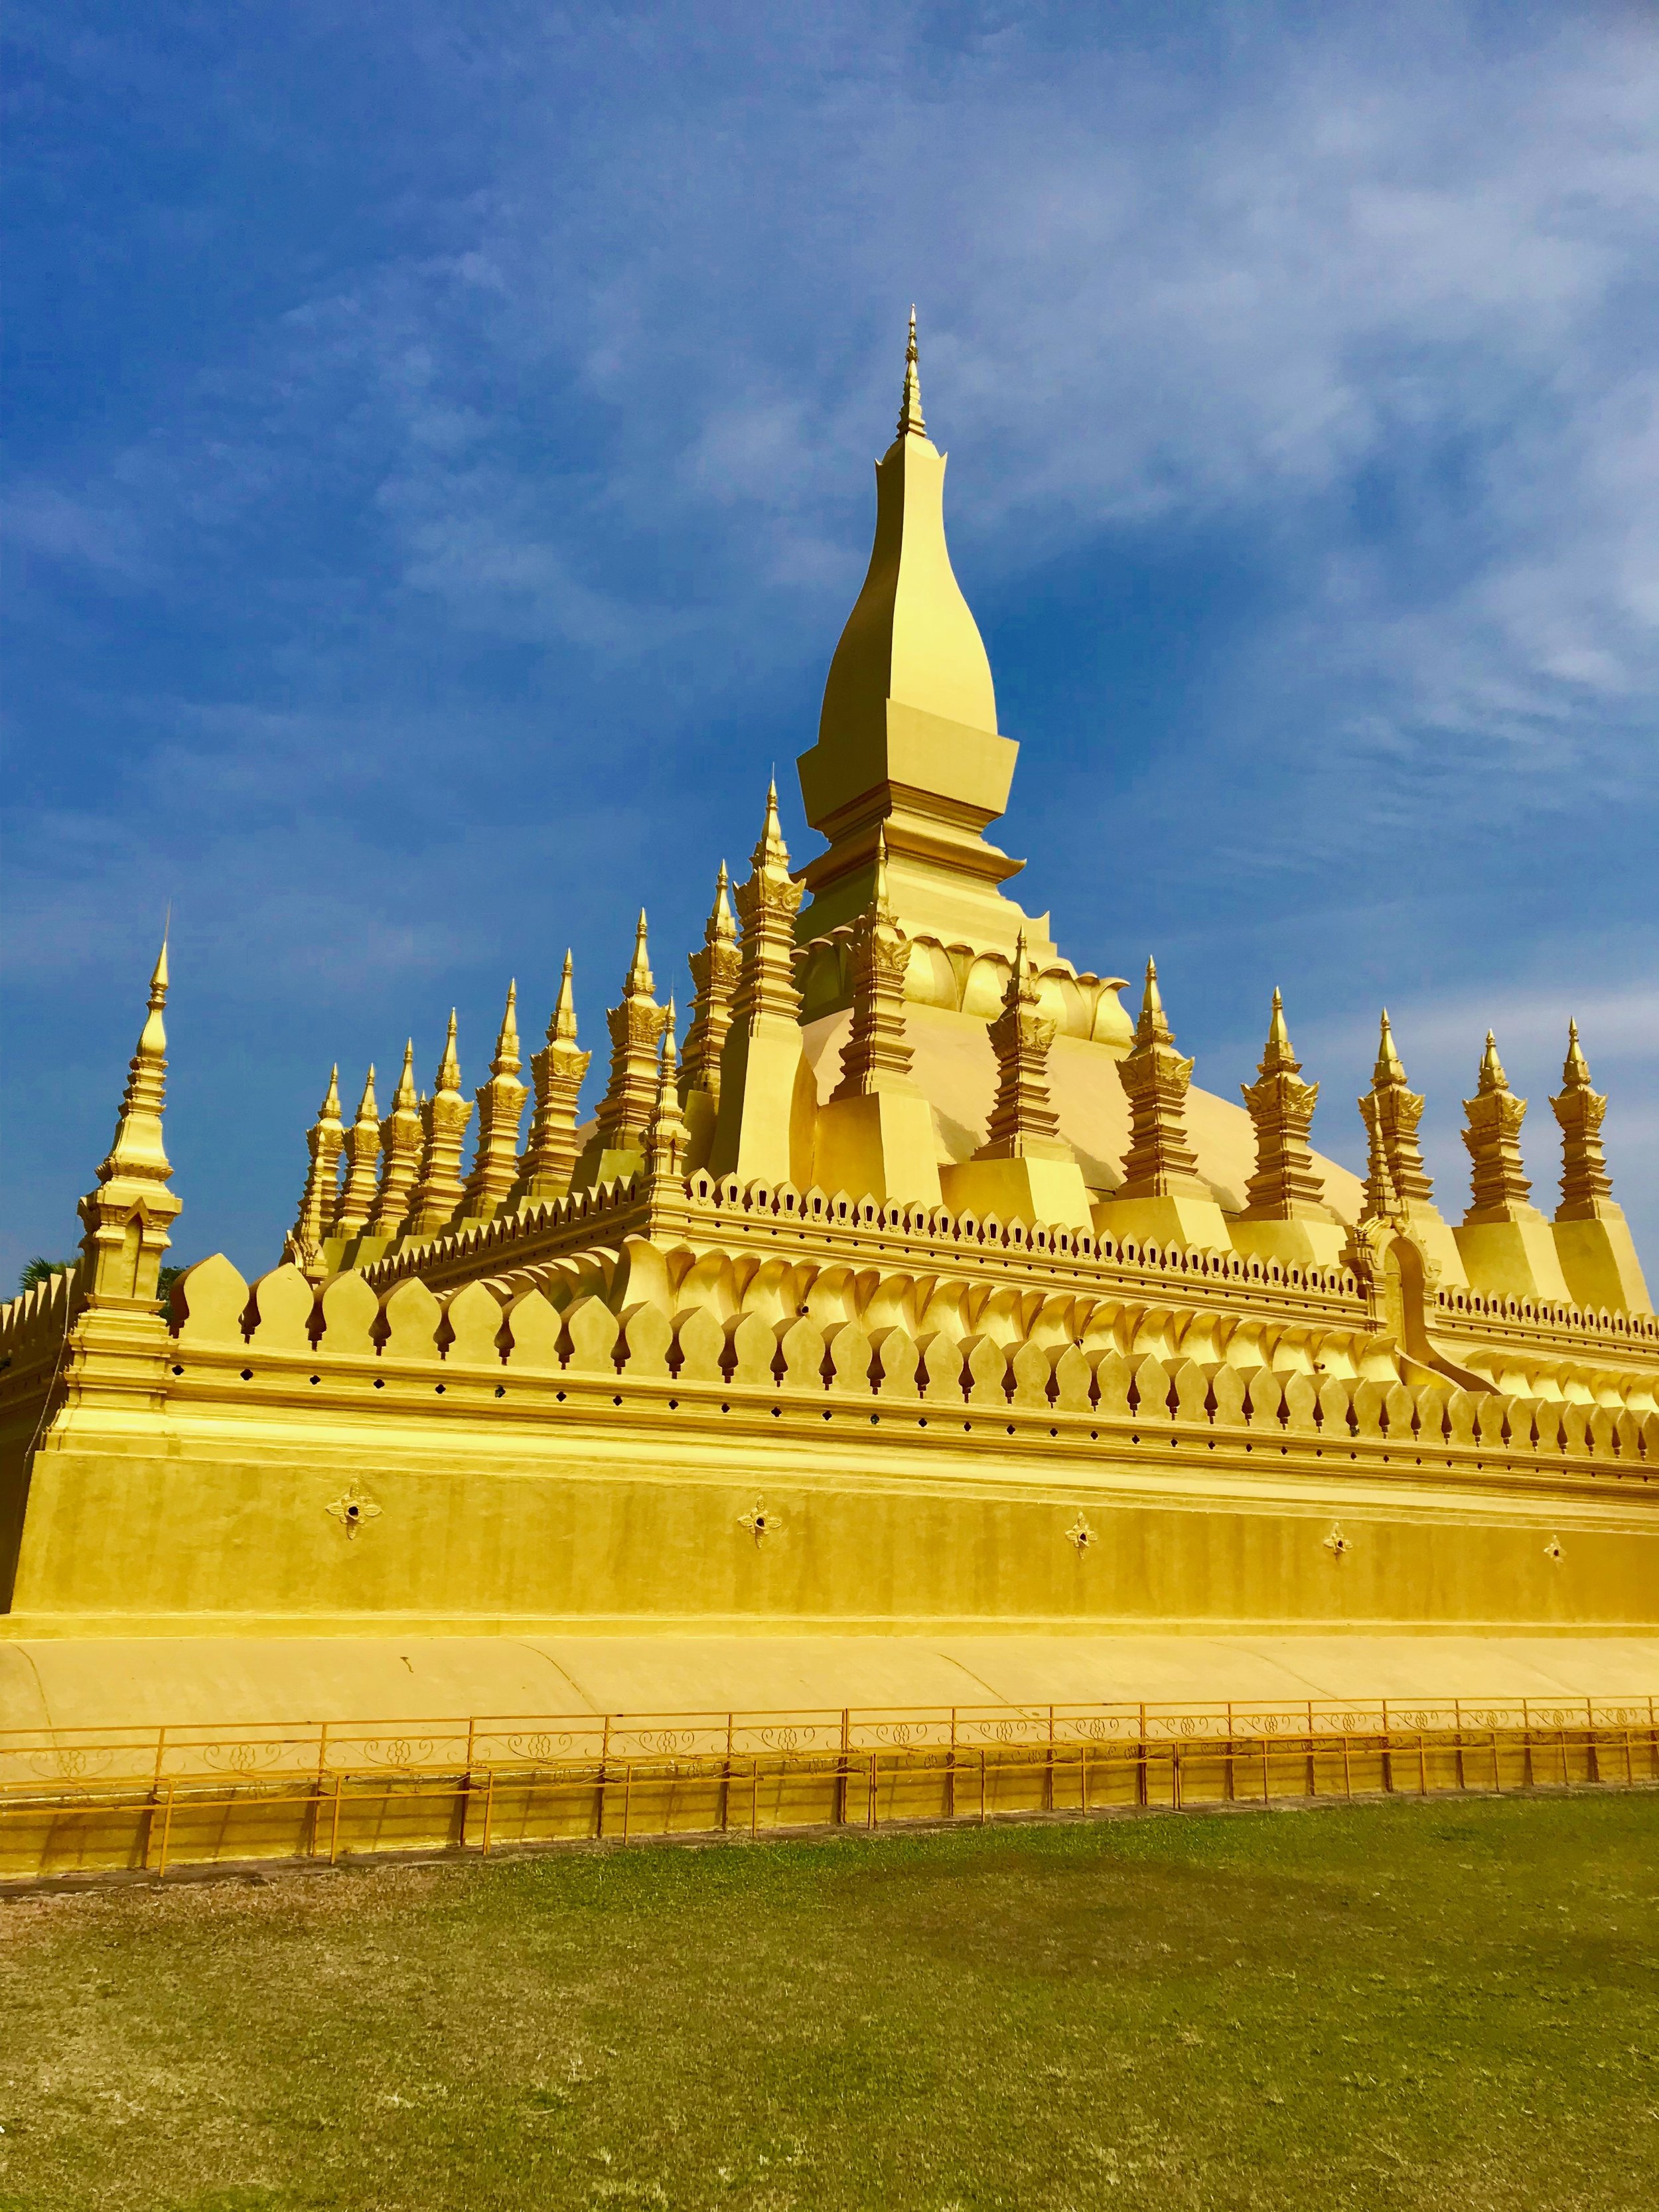 Pha That Luang (Trhee Layered GOlden STupa.jpg